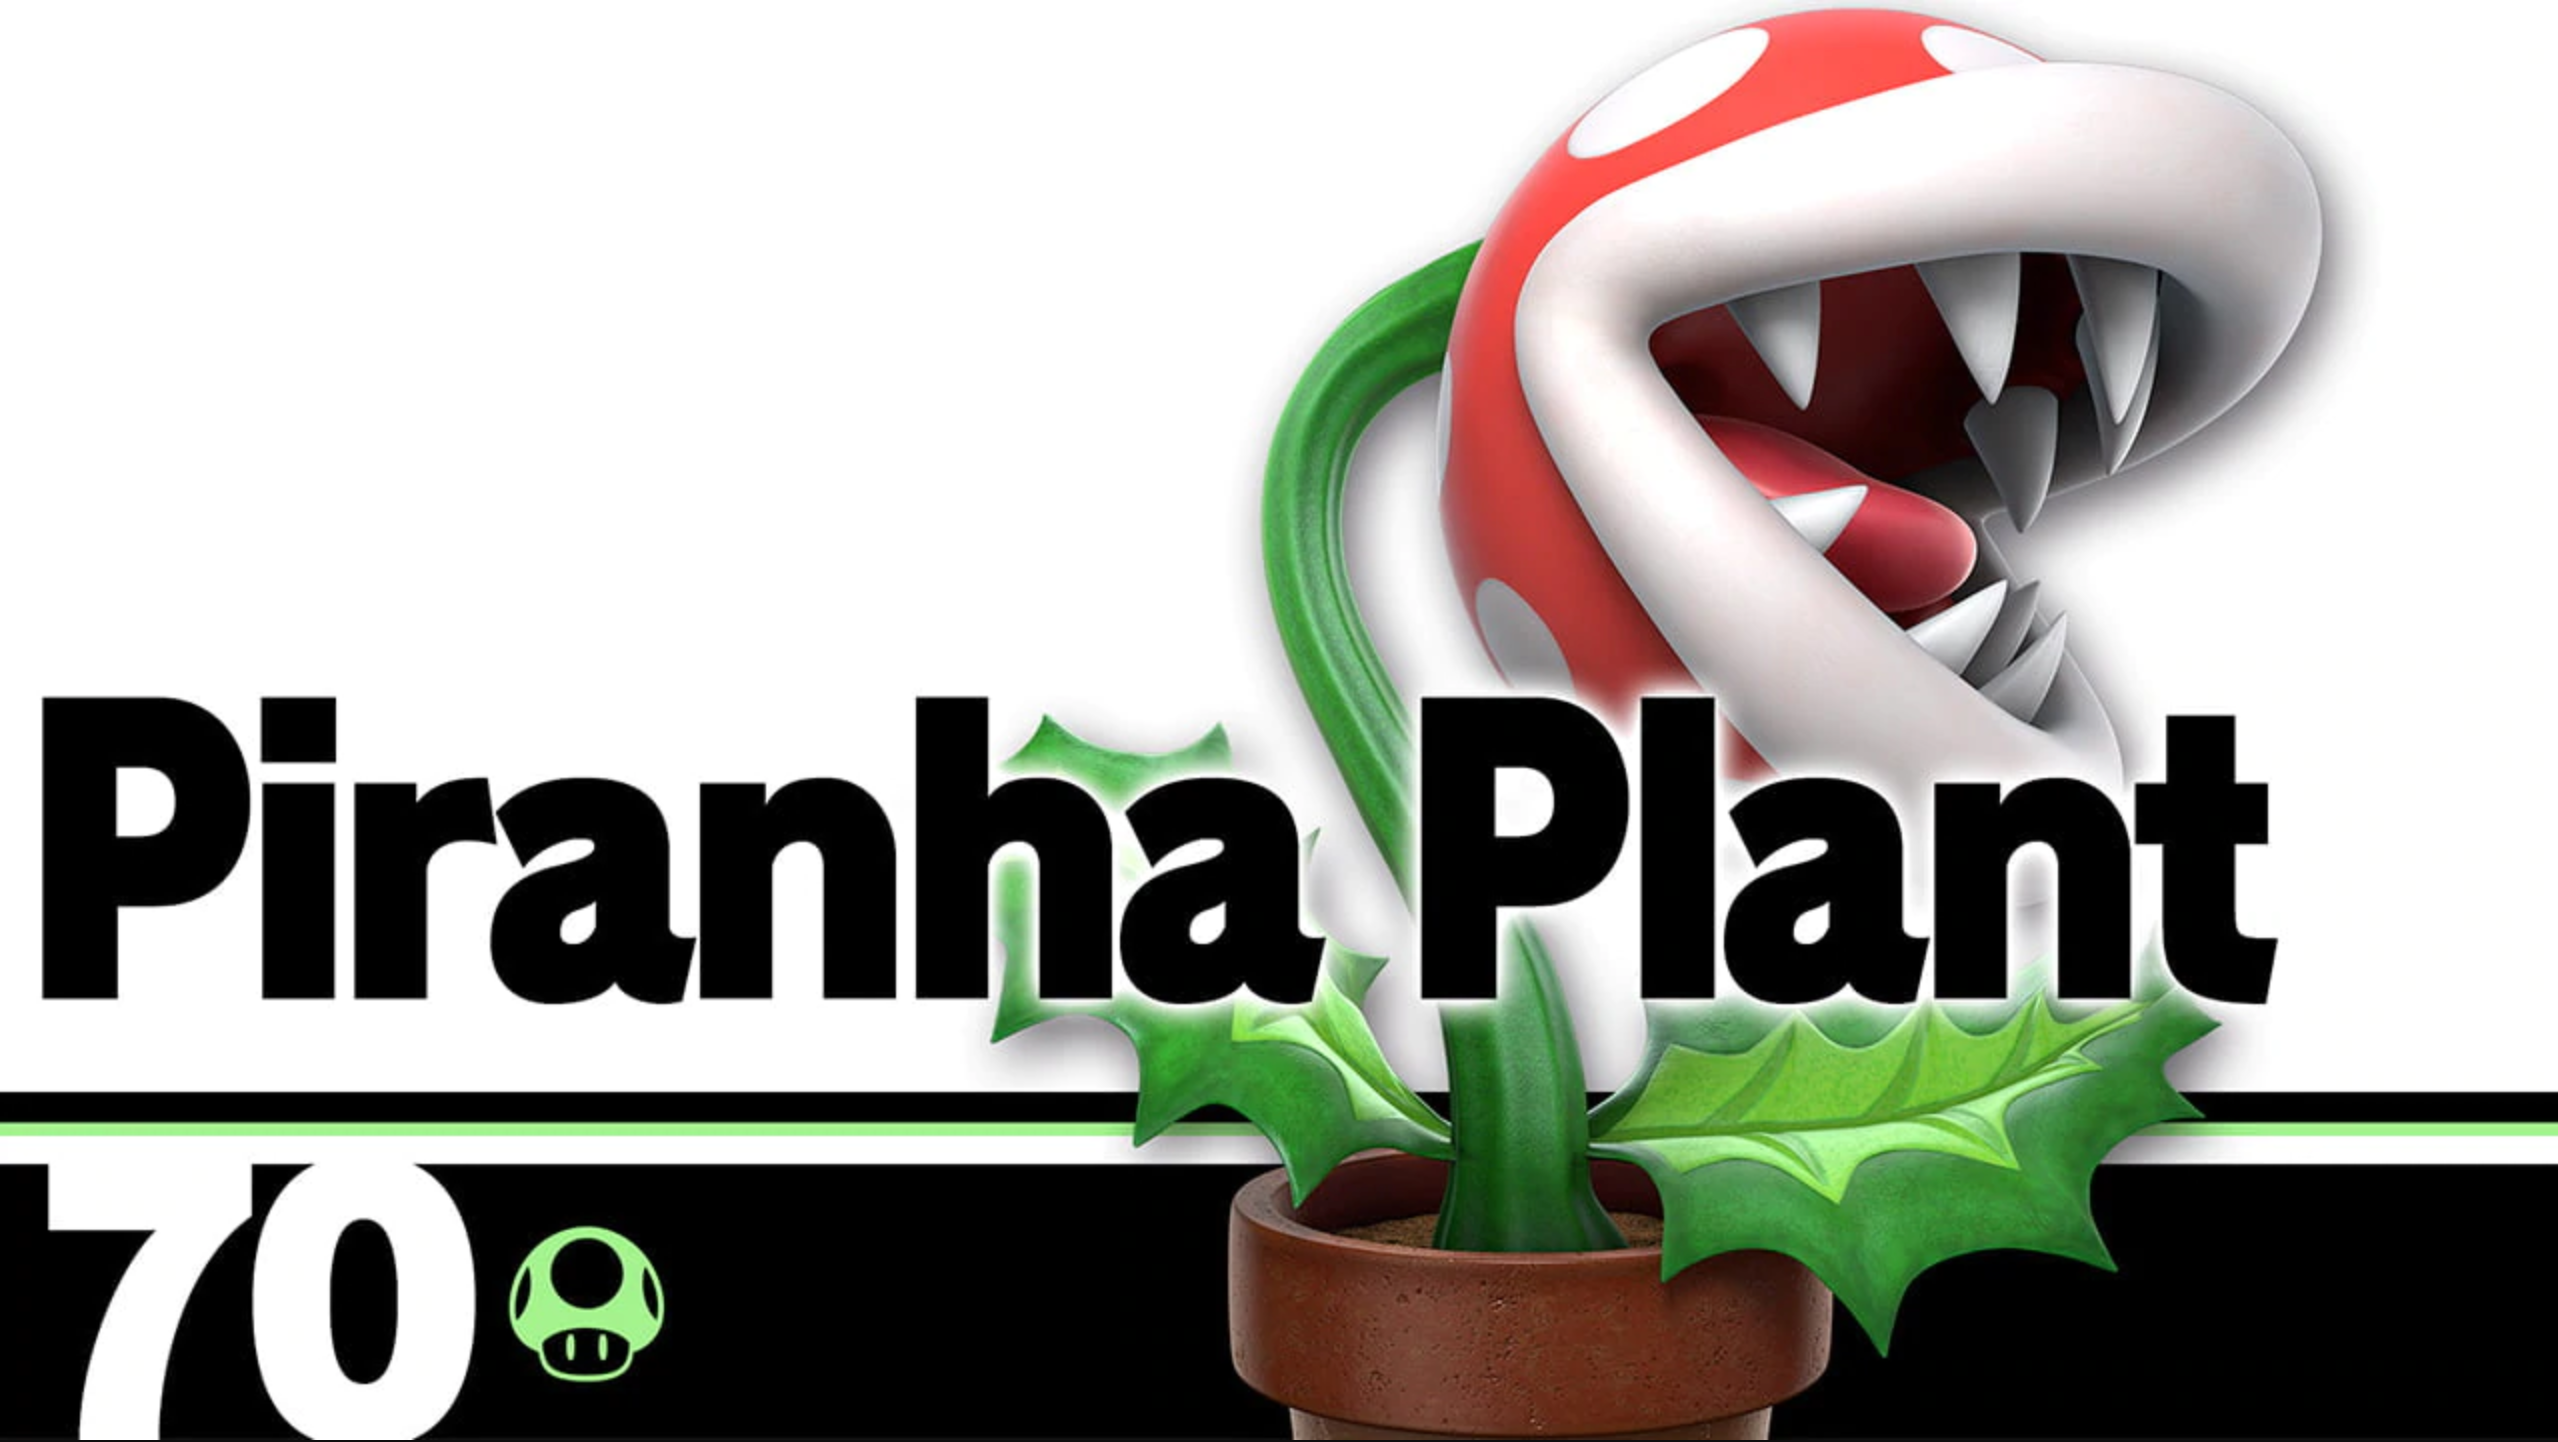 Super Smash Bros Piranha Plant